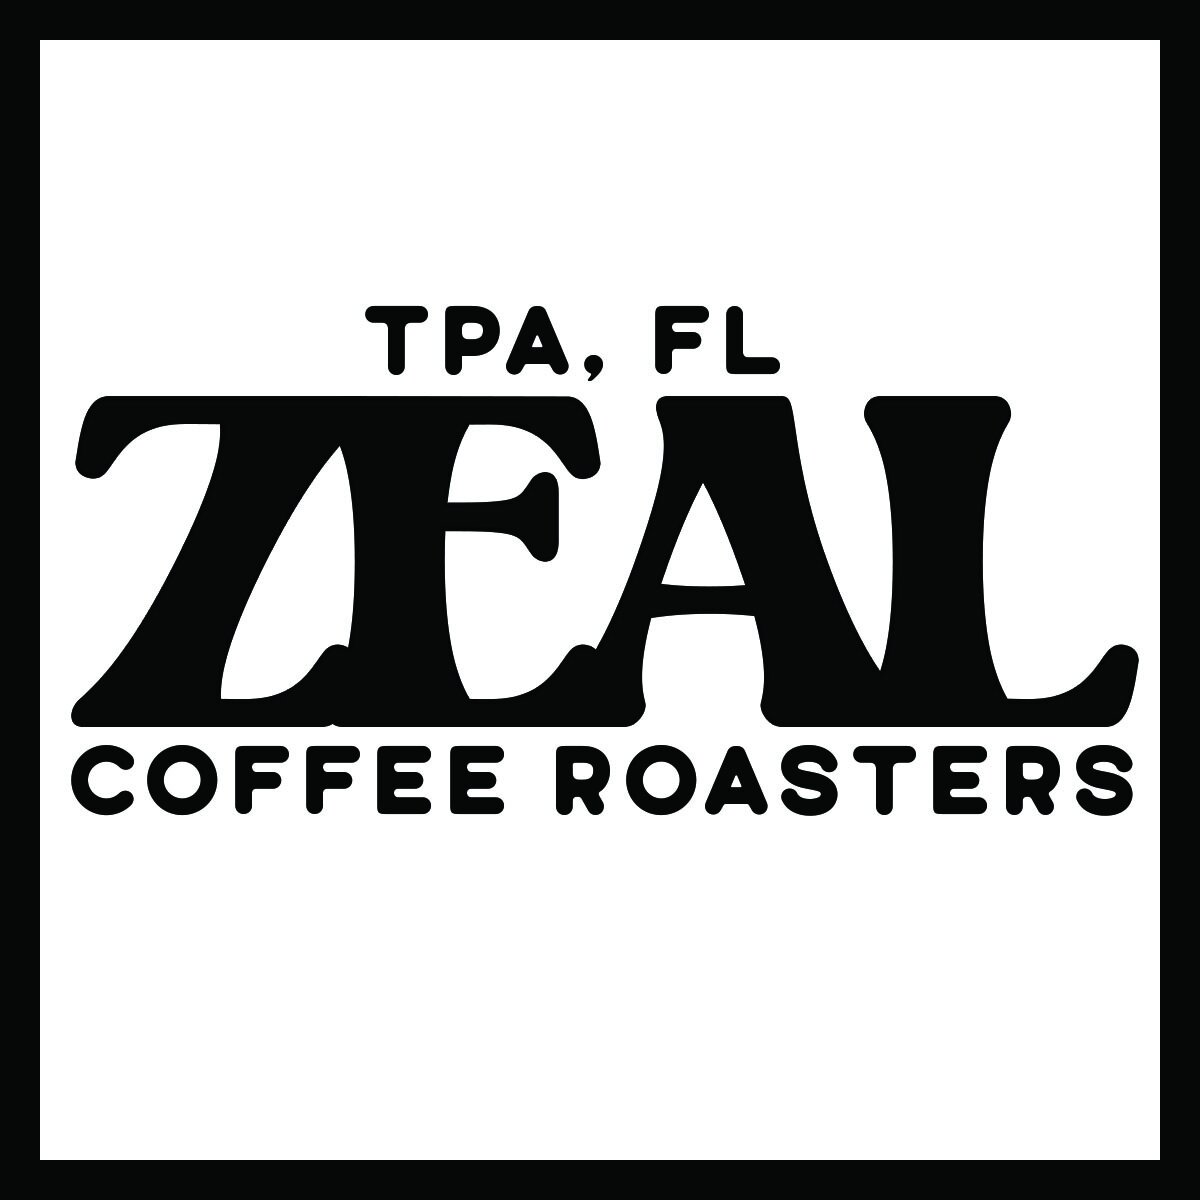 Zeal Coffee Roasters